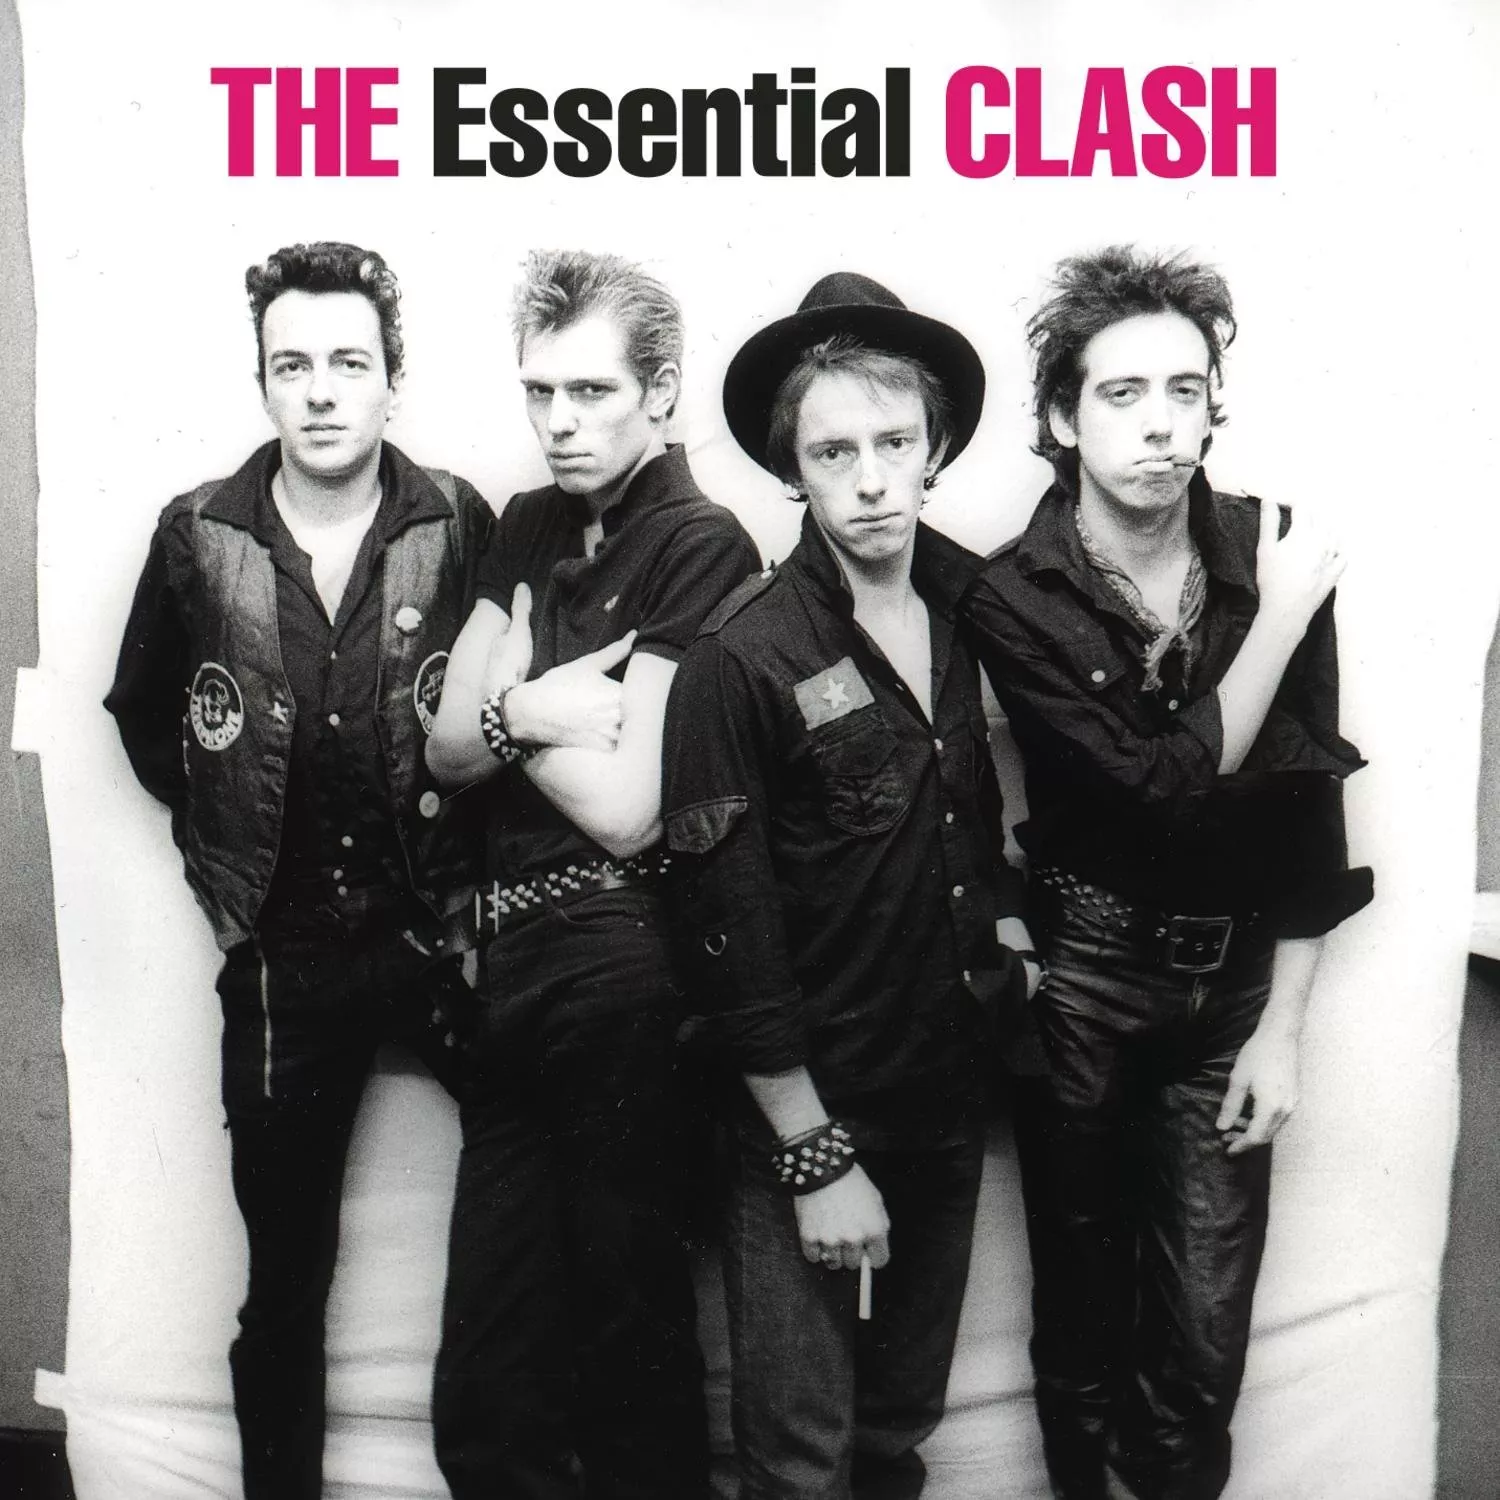 Fira Internationella The Clash-dagen med 7 underskattade låtar